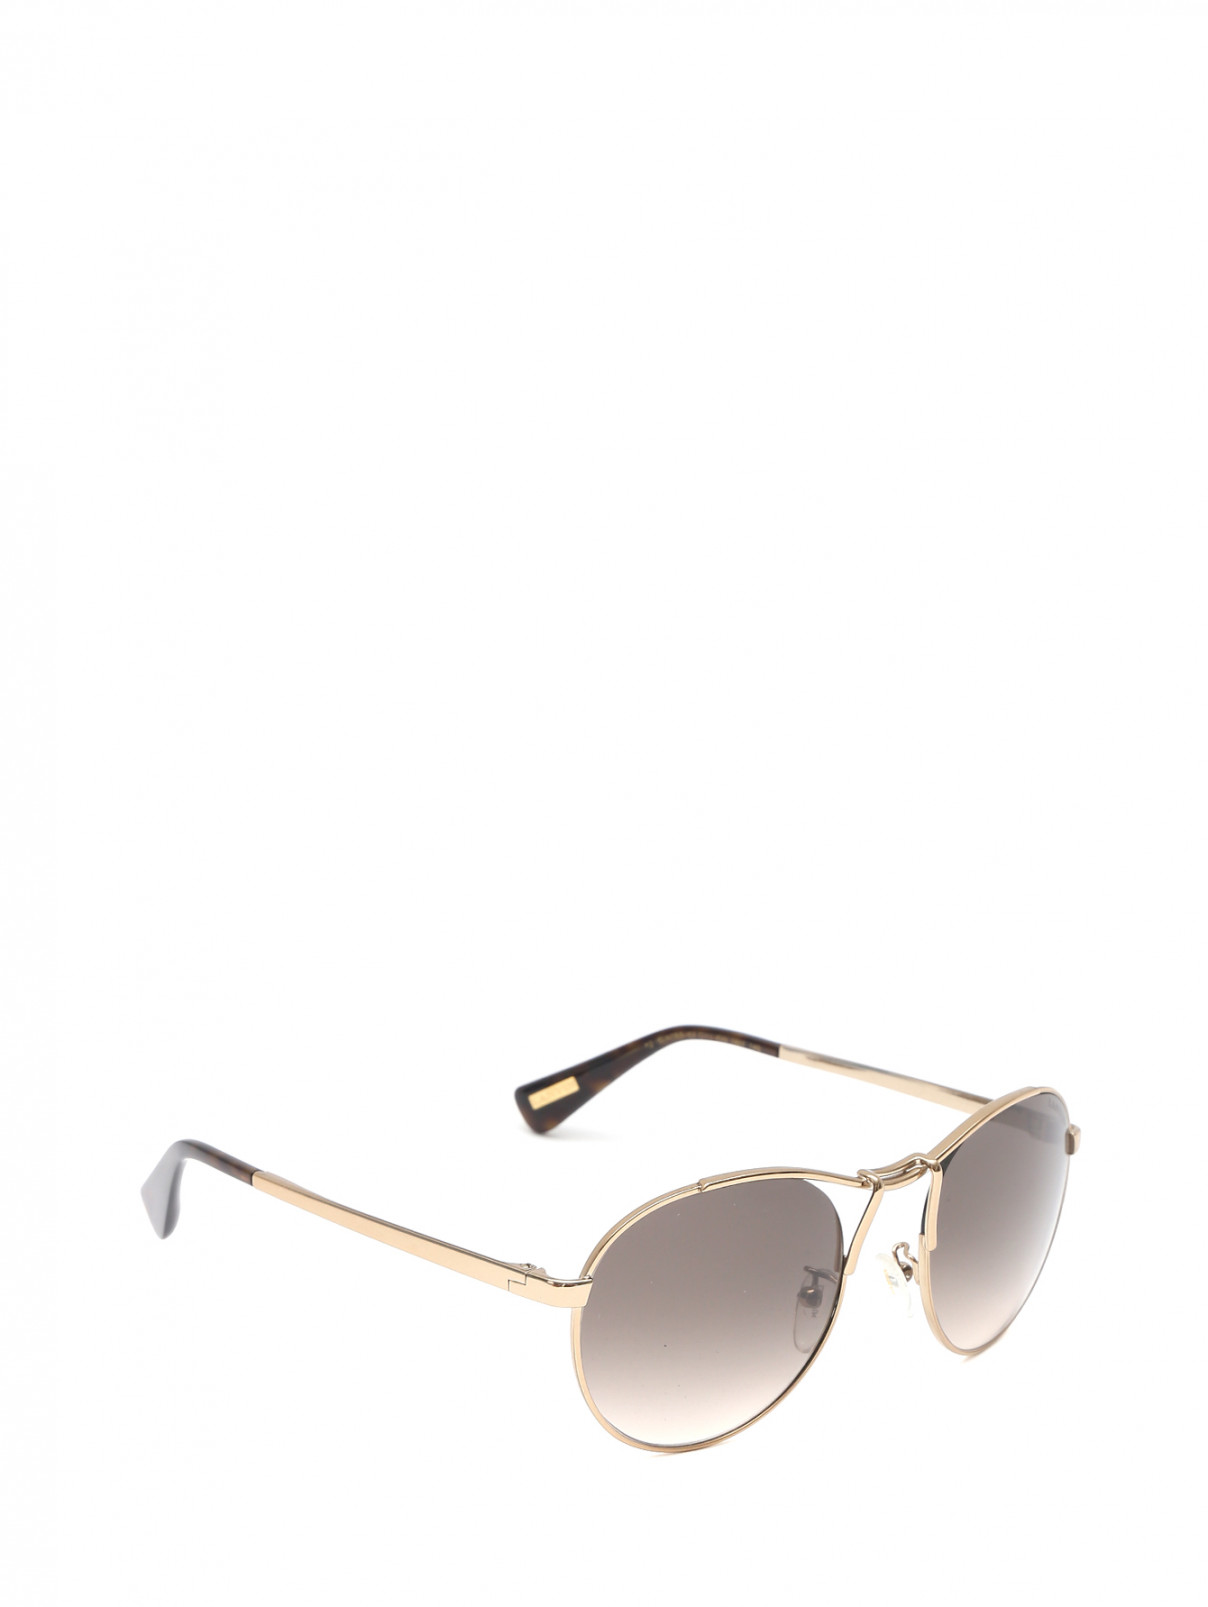 Cолнцезащитные очки в оправе из металла Lanvin  –  Обтравка1  – Цвет:  Металлик